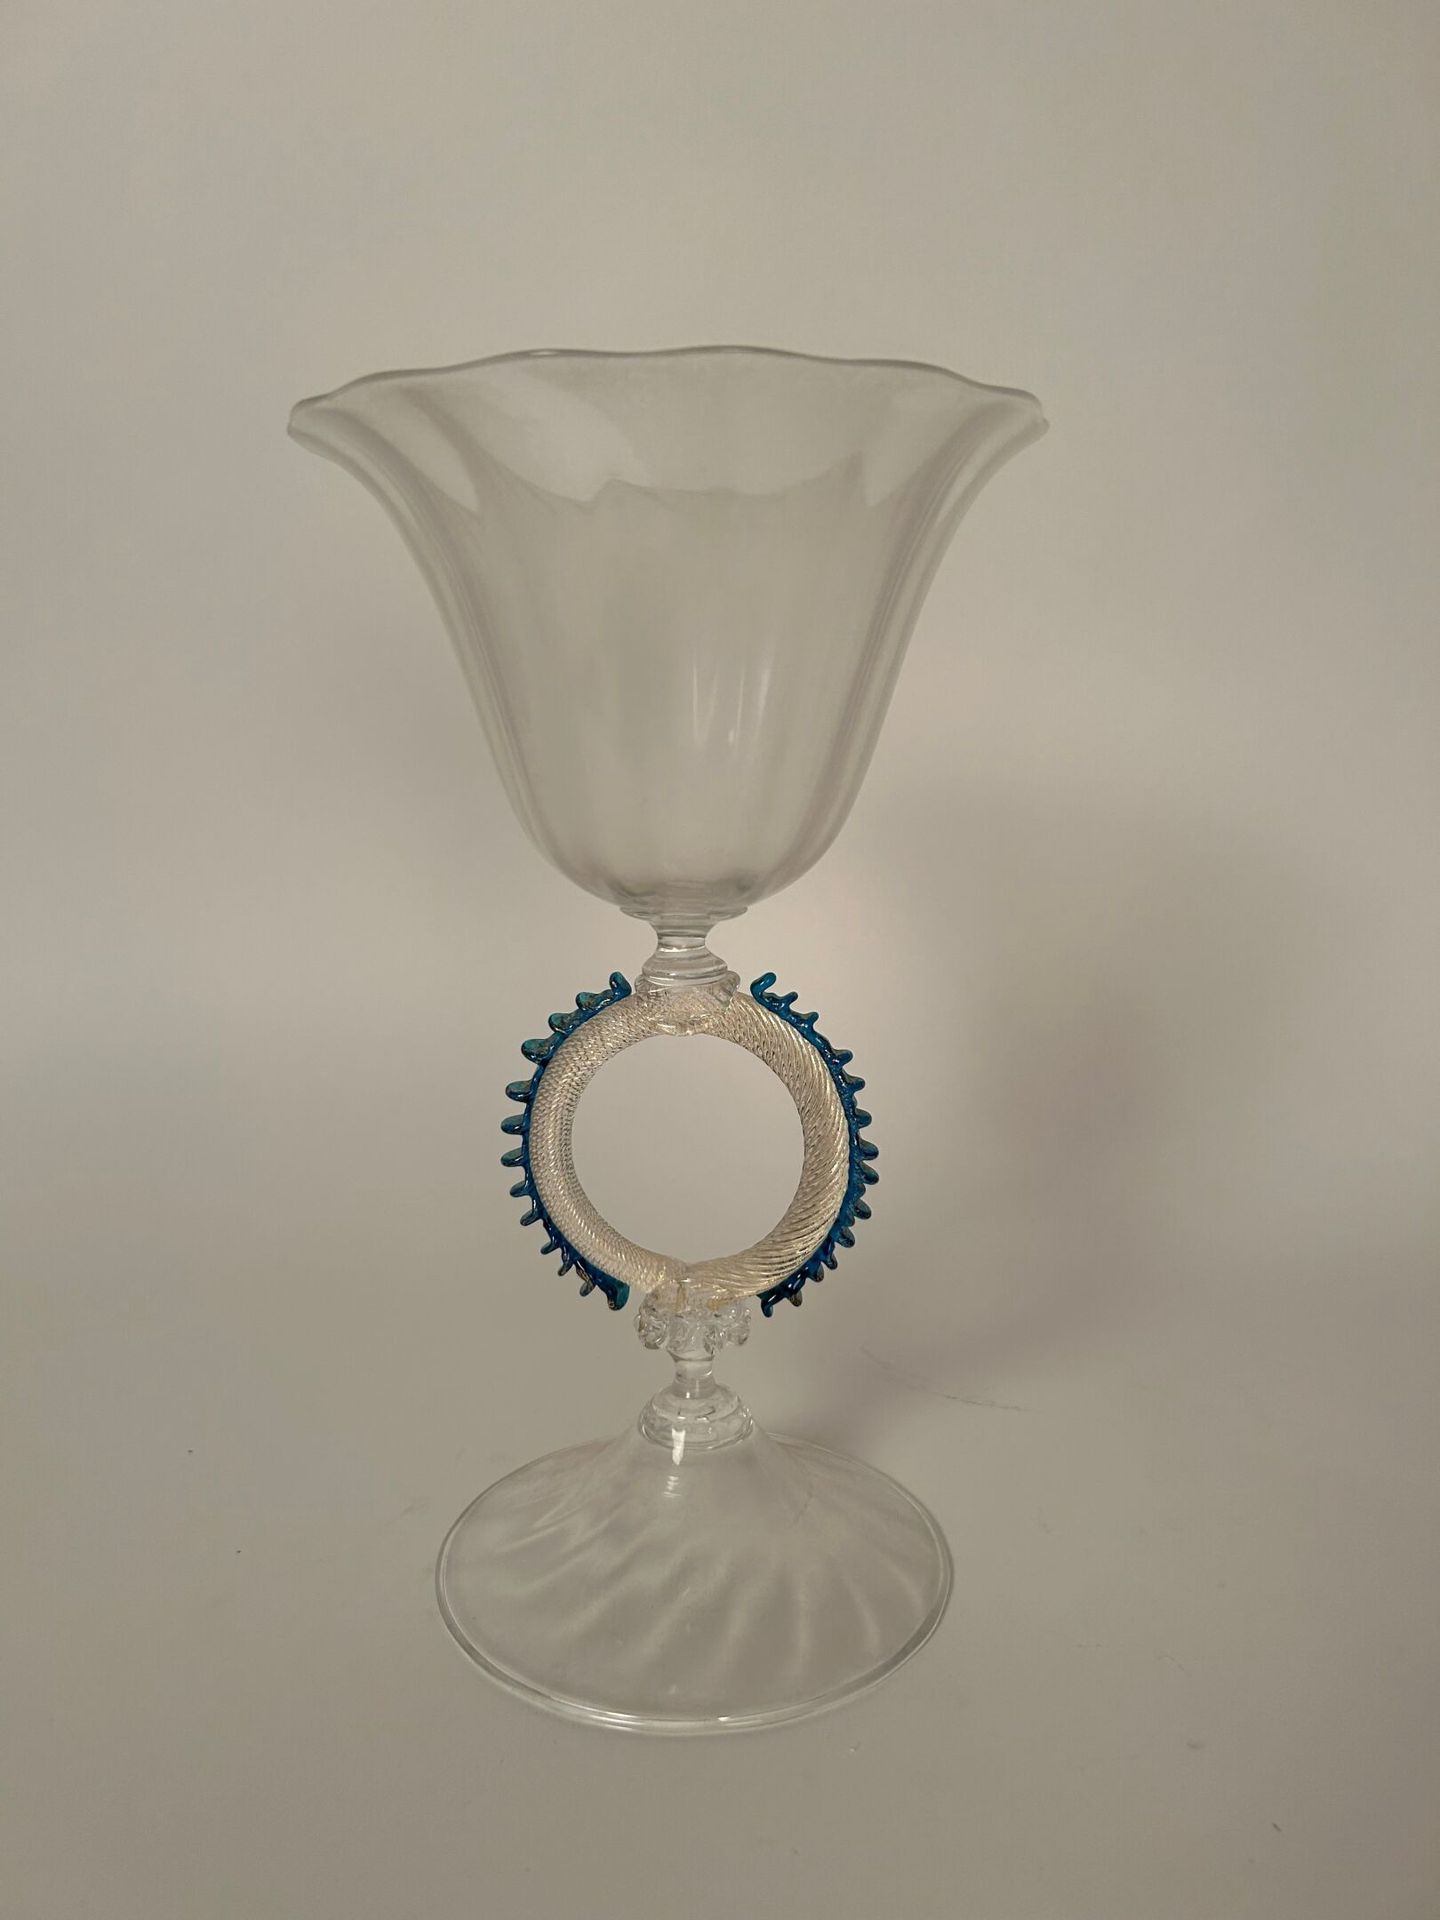 MURANO - DANS LE GOÛT DU XVIII siècle 村野 - 十八世纪的味道
吹制玻璃瓶器。上部为郁金香形，边缘饰有花饰，安放在一圈扭转&hellip;